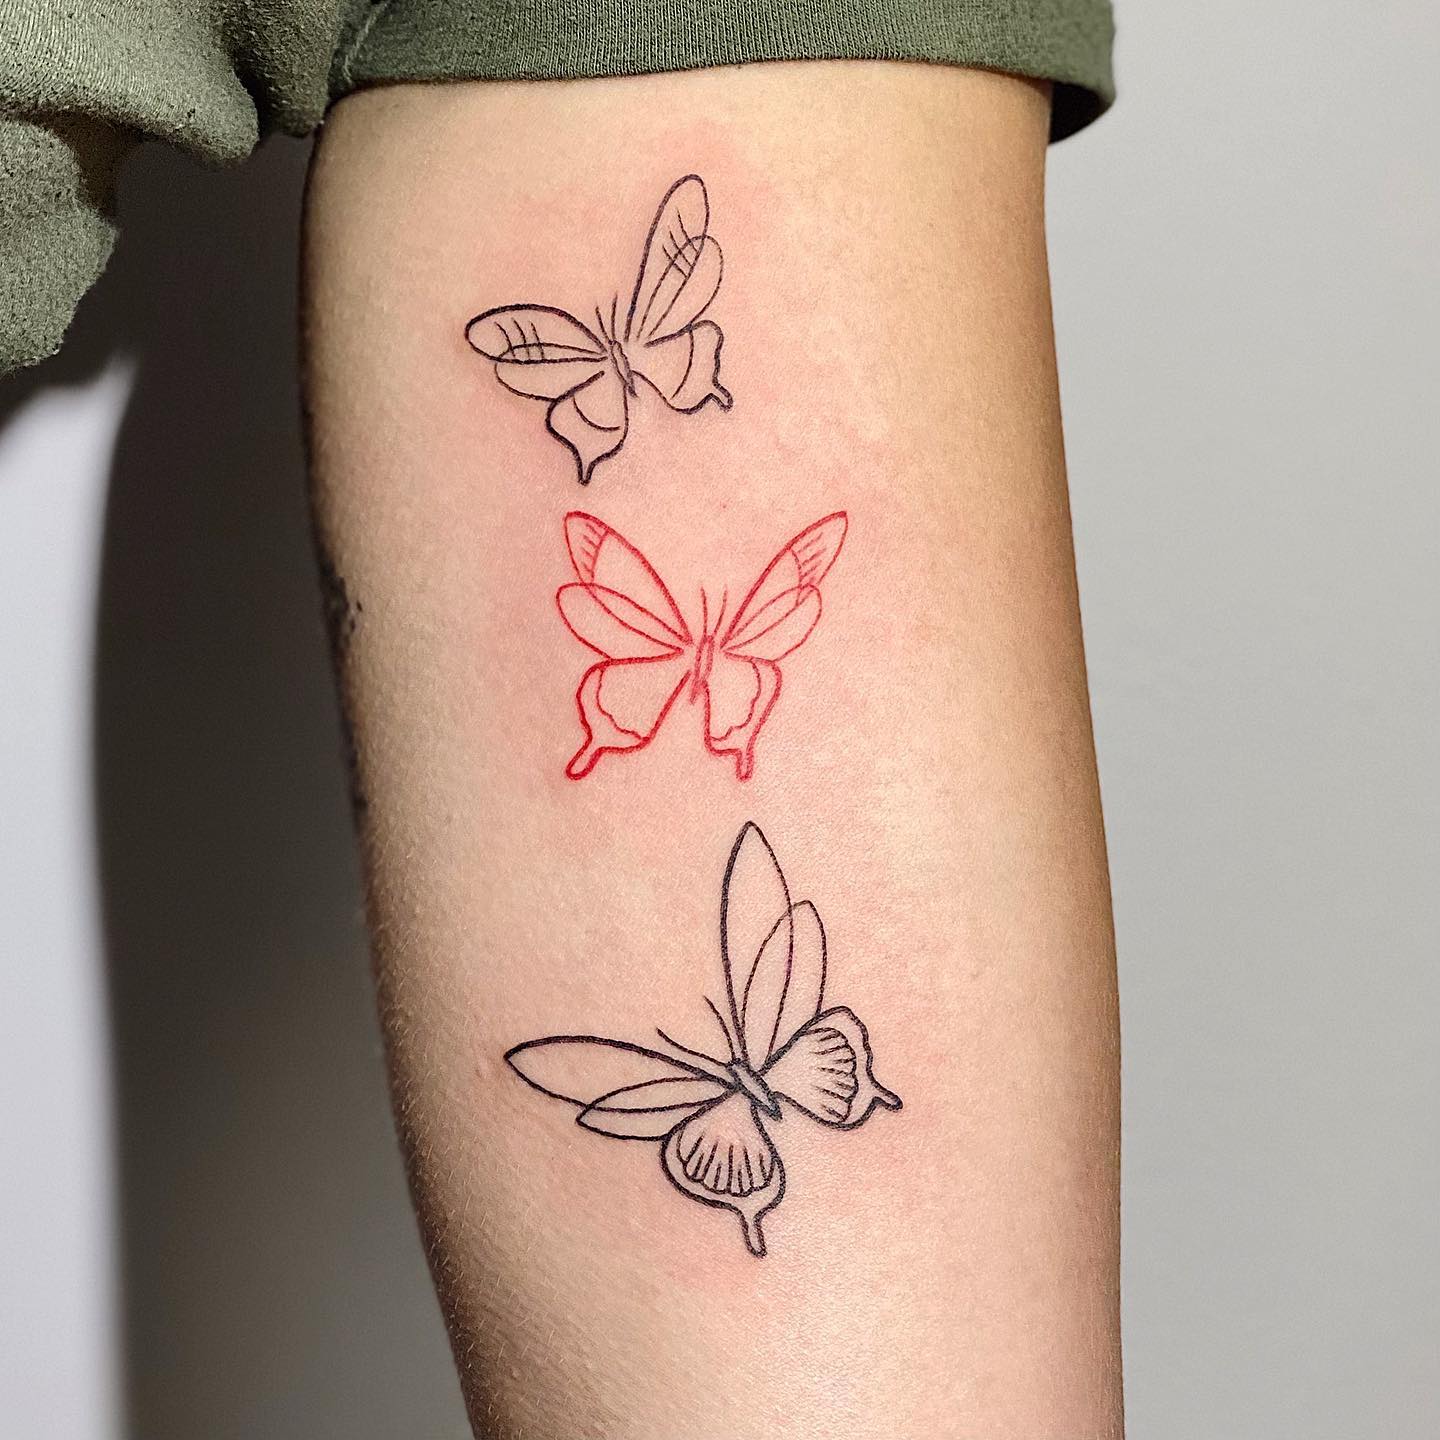 Three butterflies tattoo